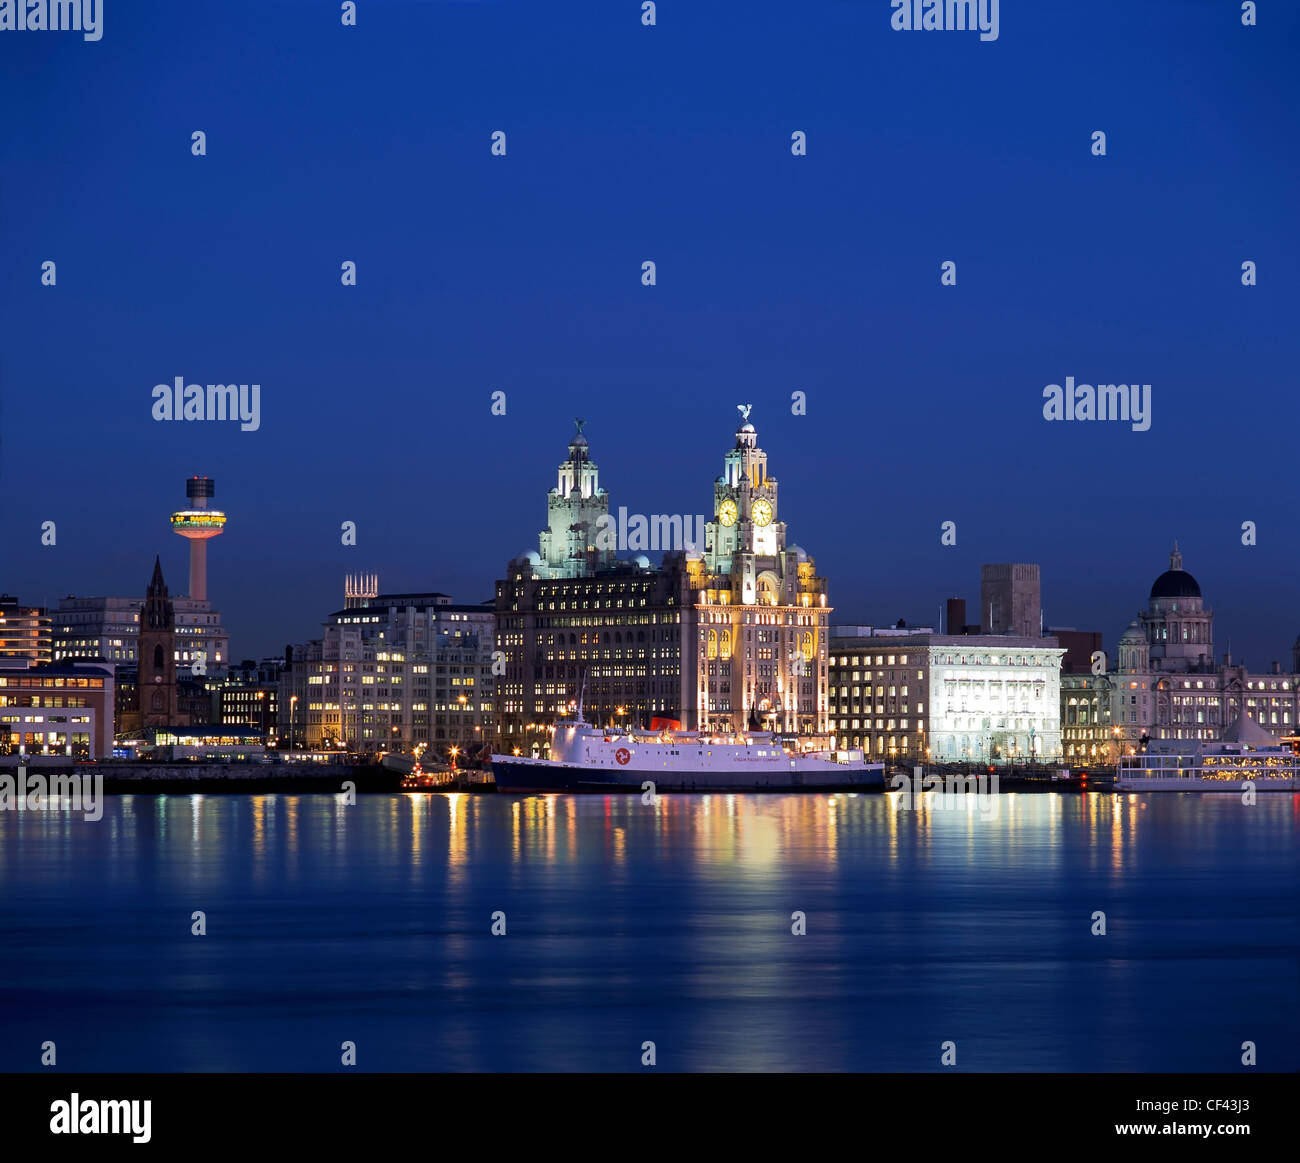 Vue sur la rivière Mersey du célèbre front de mer de Liverpool dans la nuit. Banque D'Images